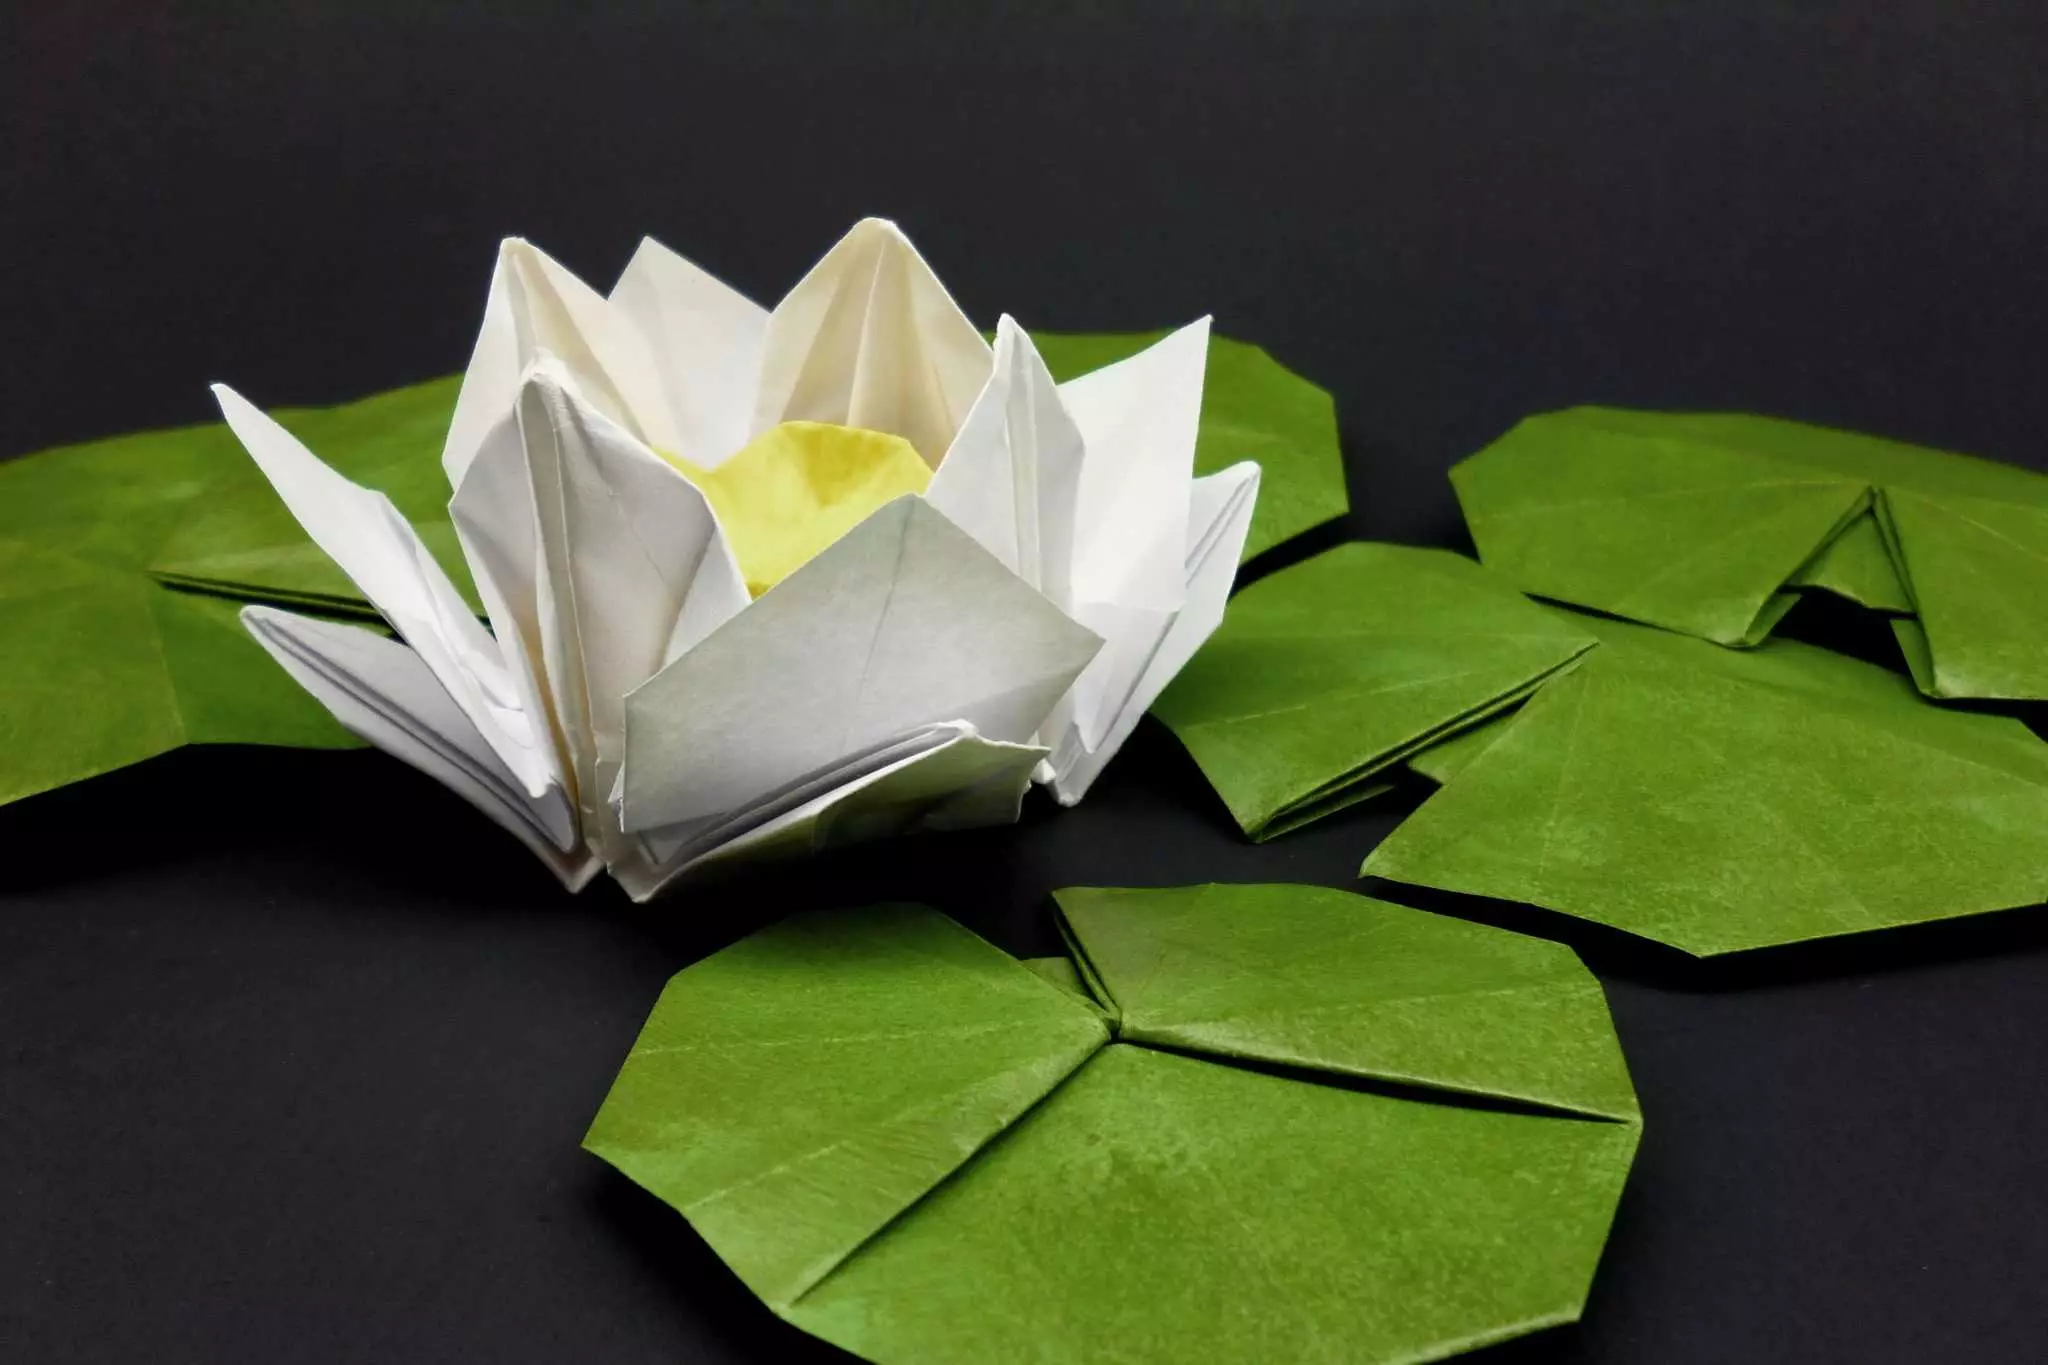 Historia del origami: la aparición de origami modular. ¿Quién inventó y en qué año? Papel de origami para niños en el mundo moderno. 27025_15